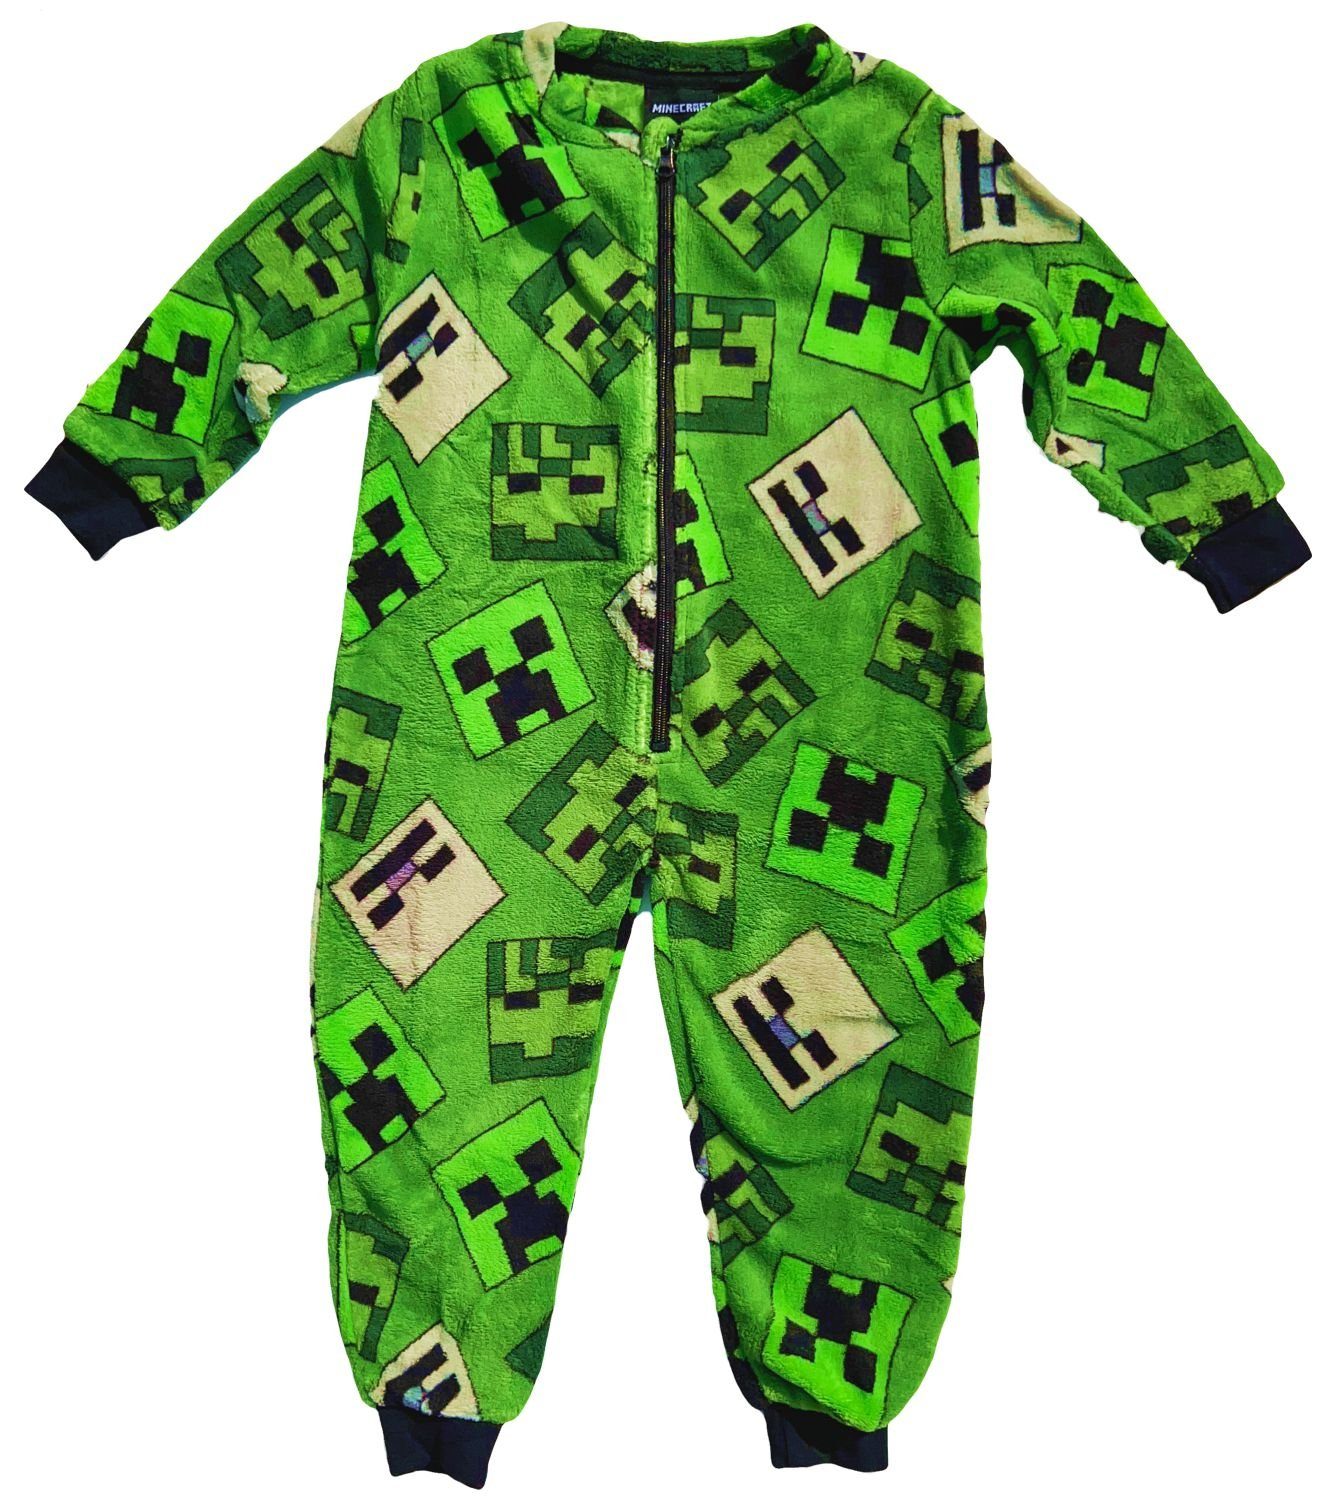 Minecraft Jumpsuit »MINECRAFT Kinder Jumpsuit Overall Pyjama Strampelanzug  Jungen + Mädchen 3 4 5 6 7 8 9 10 Jahre Gr: 98/104 110/116 122/1280134/140«  online kaufen | OTTO